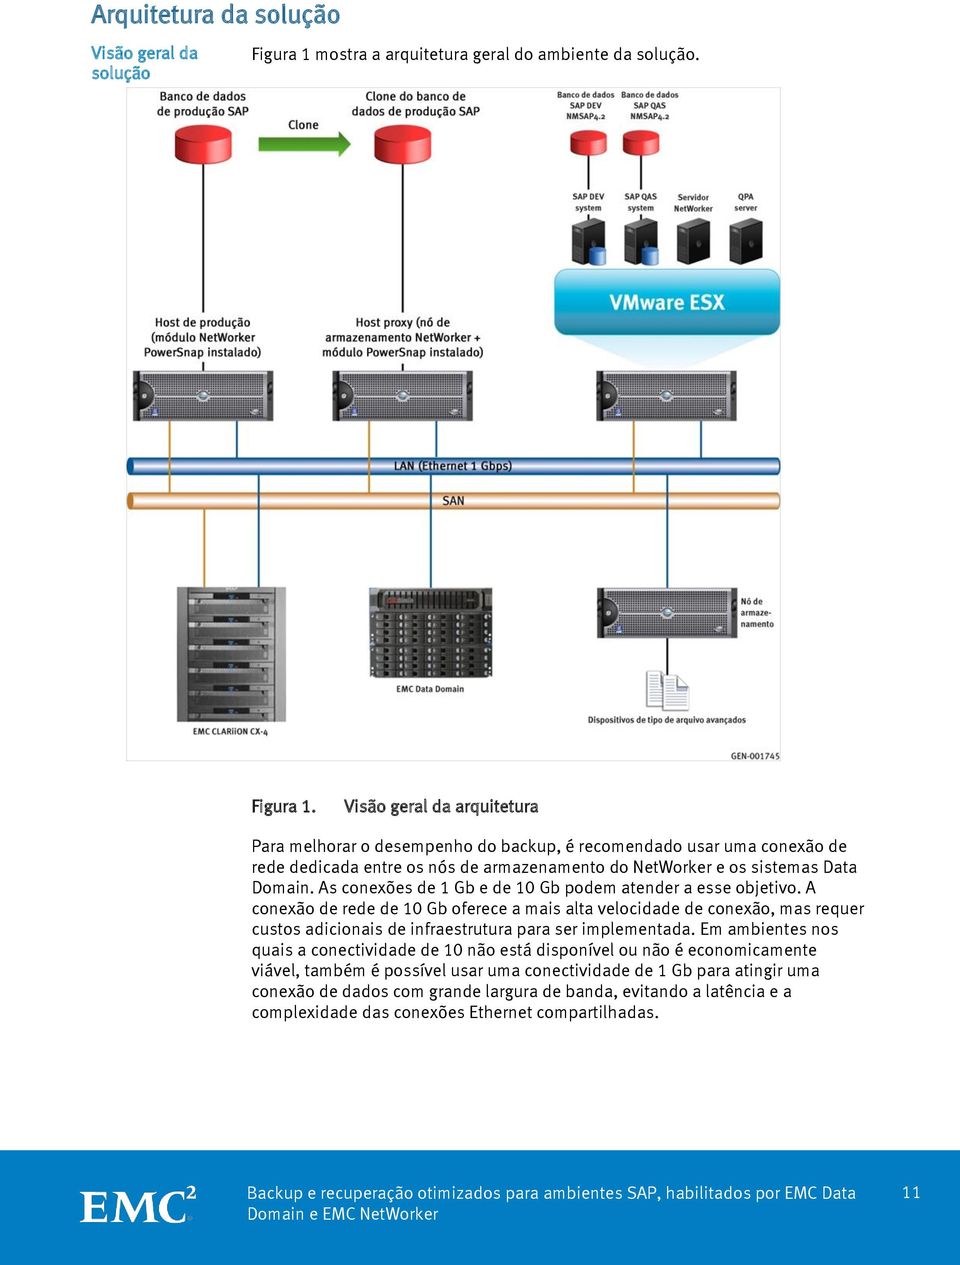 Visão geral da arquitetura Para melhorar o desempenho do backup, é recomendado usar uma conexão de rede dedicada entre os nós de armazenamento do NetWorker e os sistemas Data Domain.